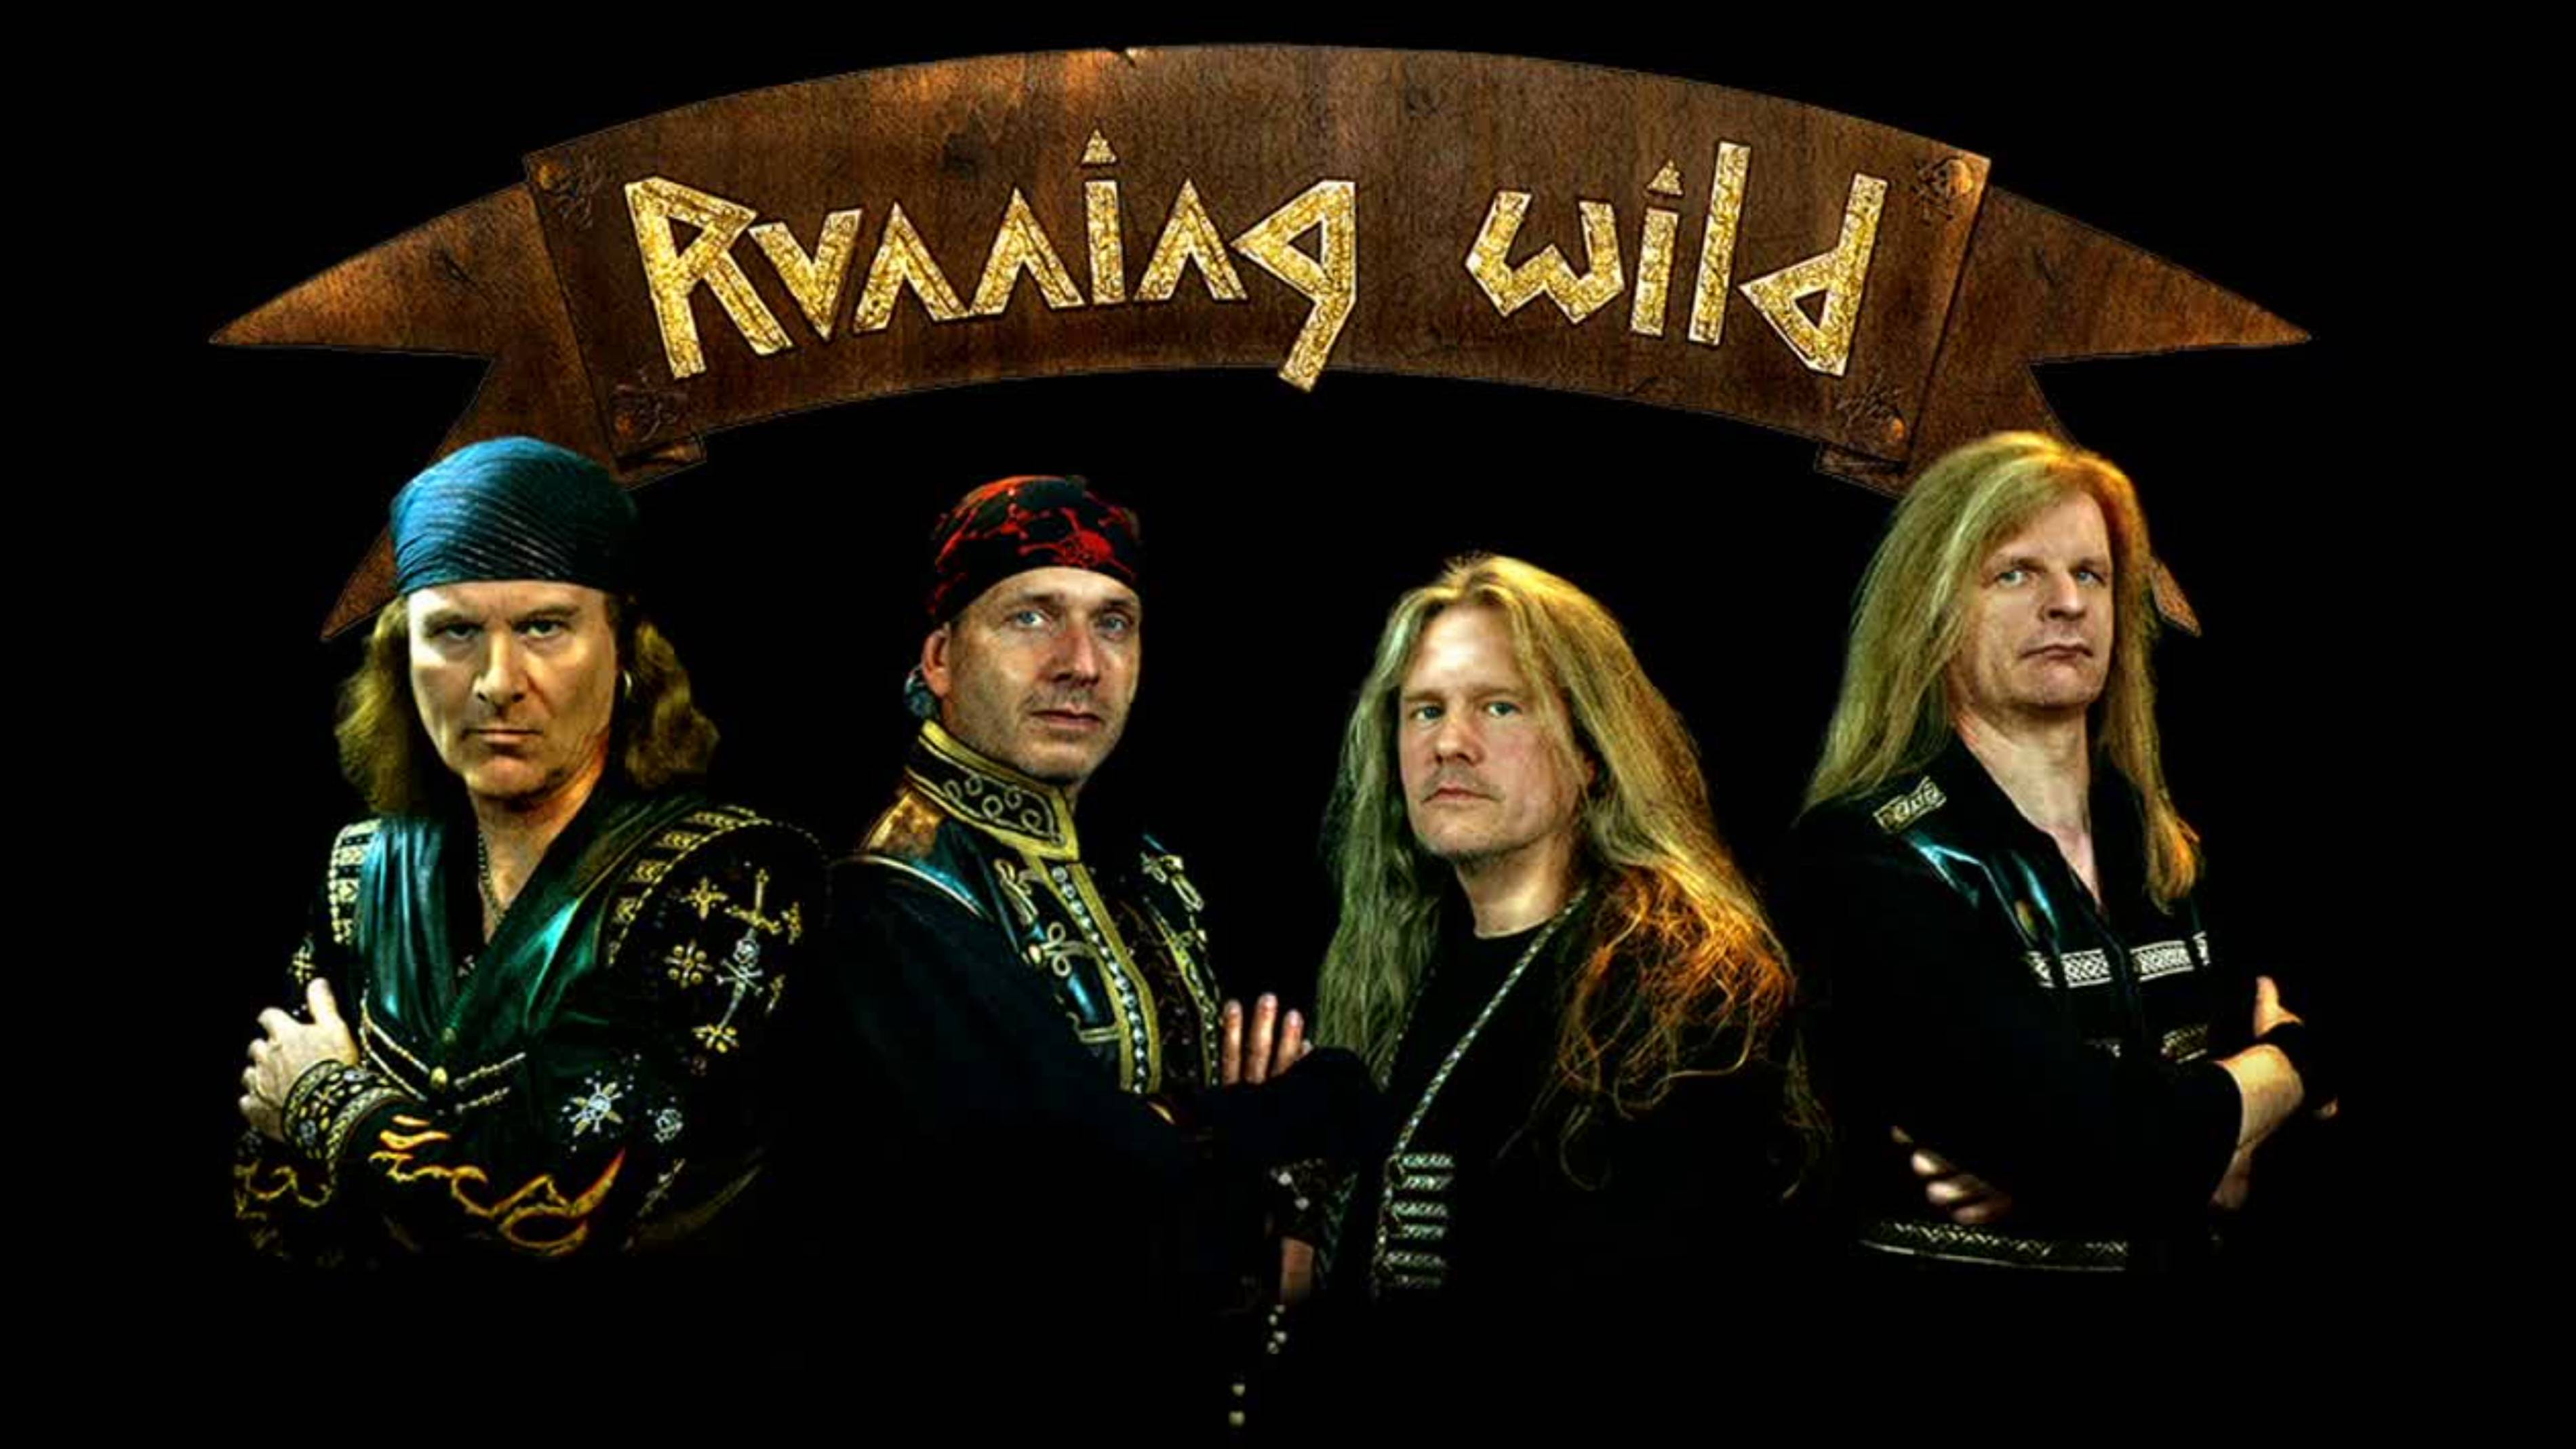 Running Wild / Port Royal Live at Wacken Open Air 2018